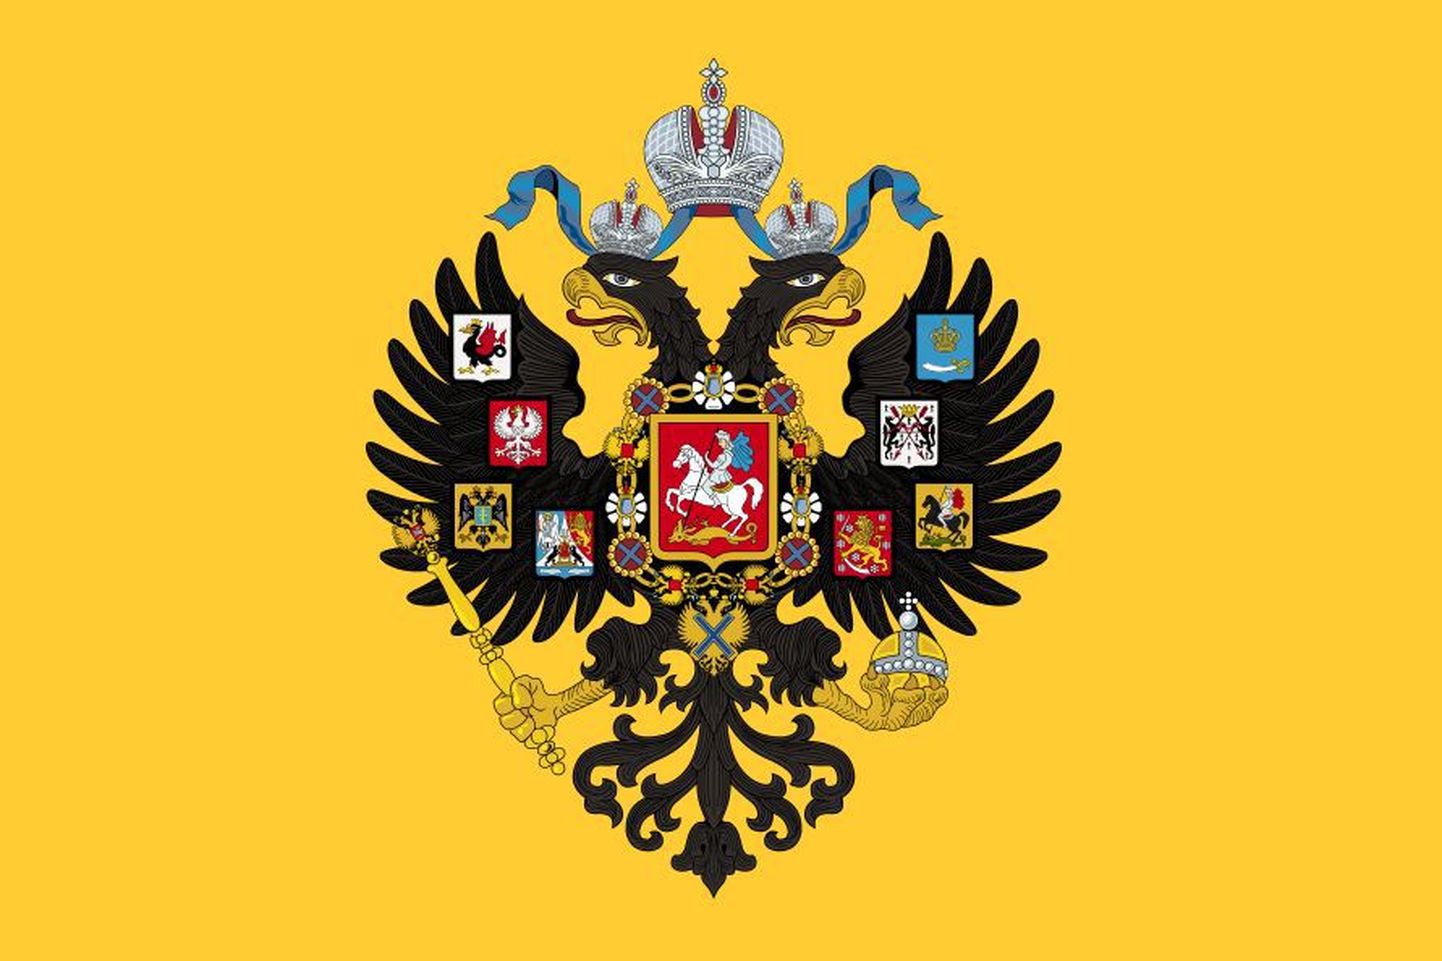 Kollane kahe peaga kotka ja allutatud alade vappidega lipp oli Vene tsaaririigis kasutusel 1858 – 1917